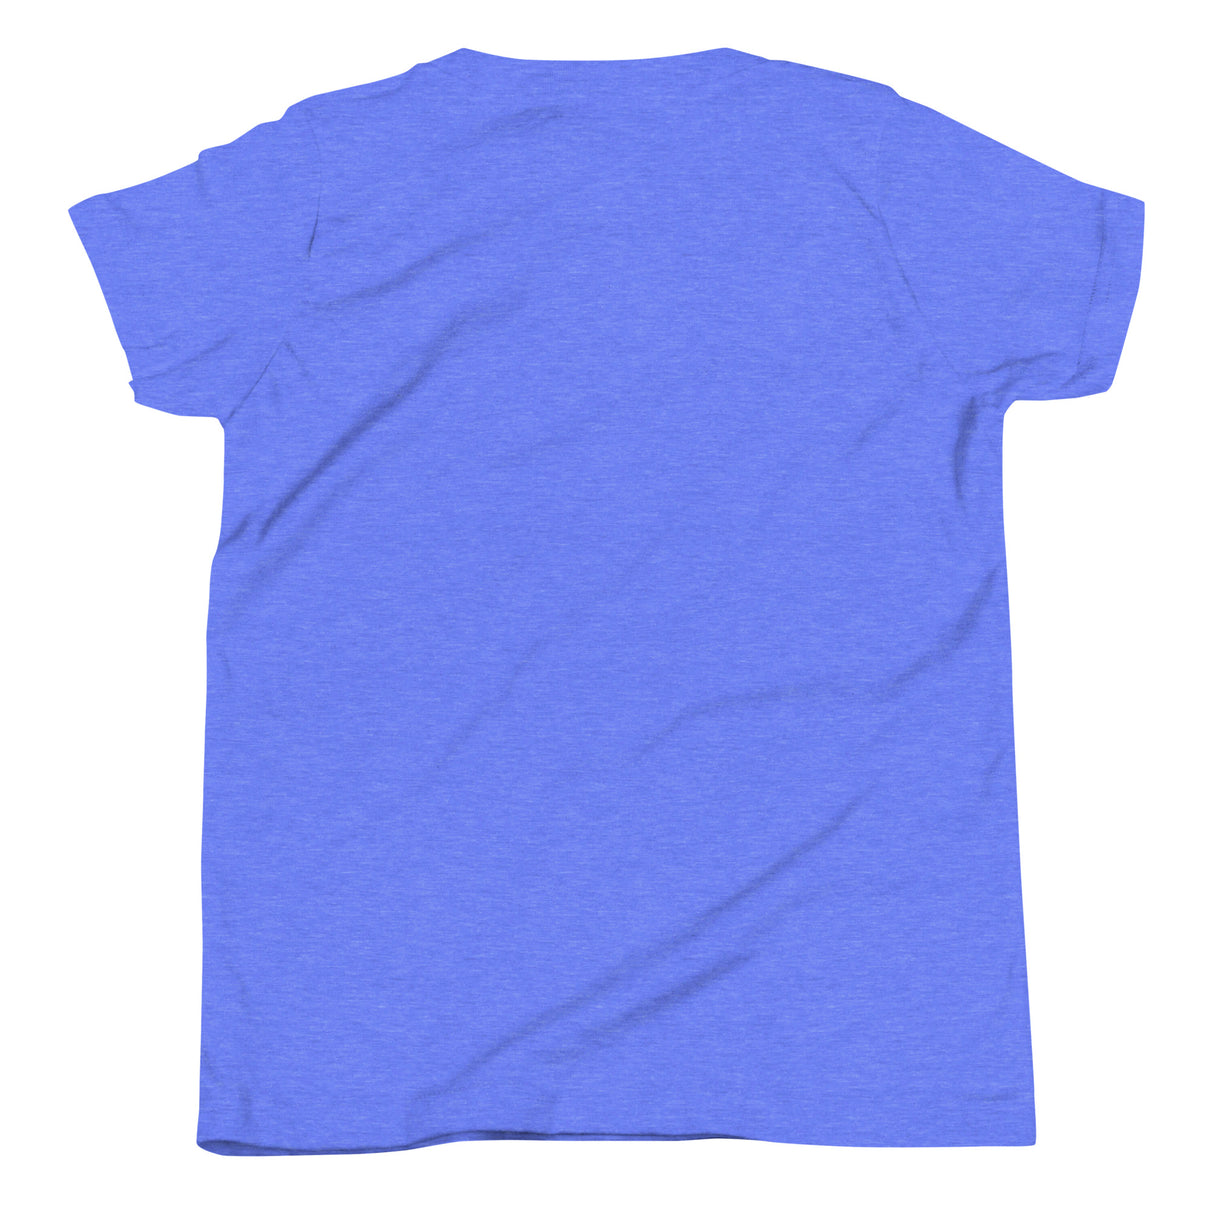 Kids' Top Ten Soccer Short Sleeve T-Shirt